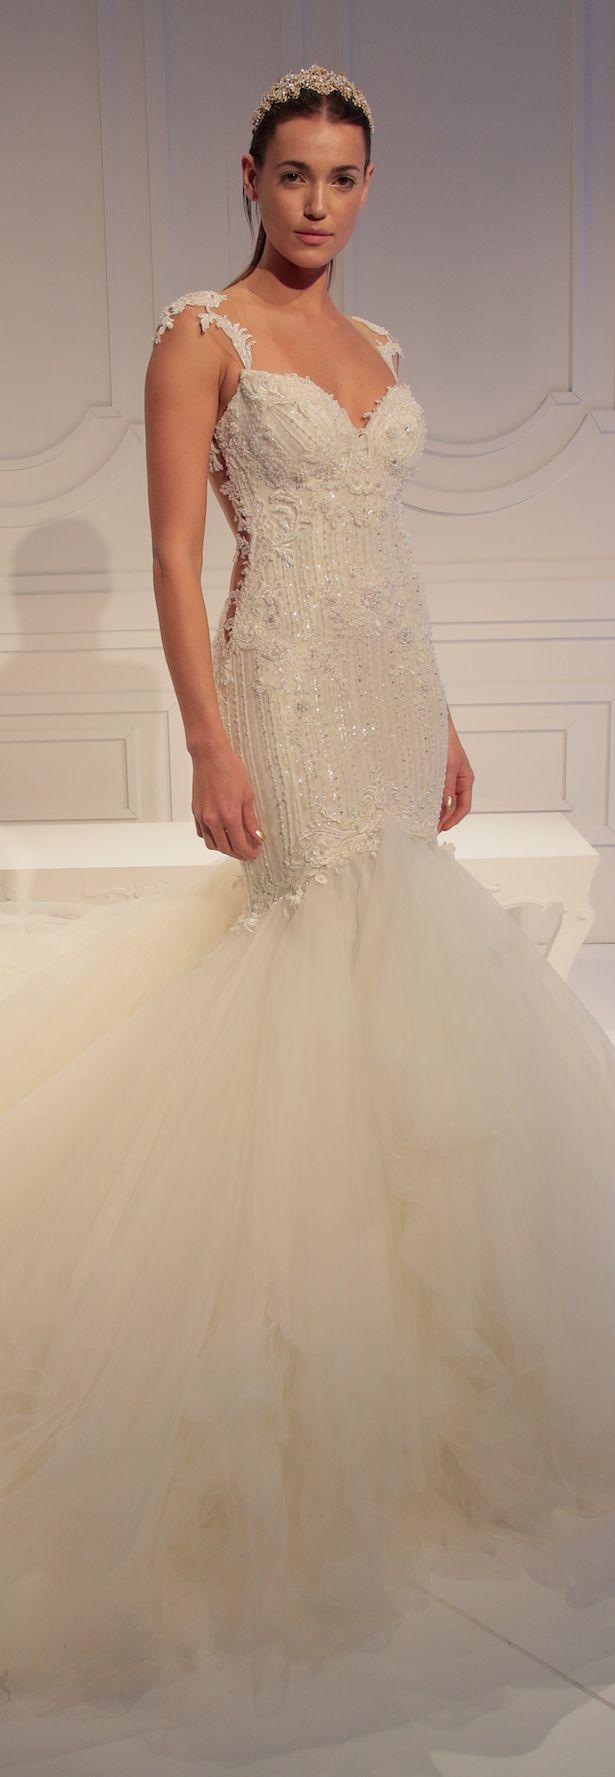 Mariage - Bridal Dress by Galia Lahav